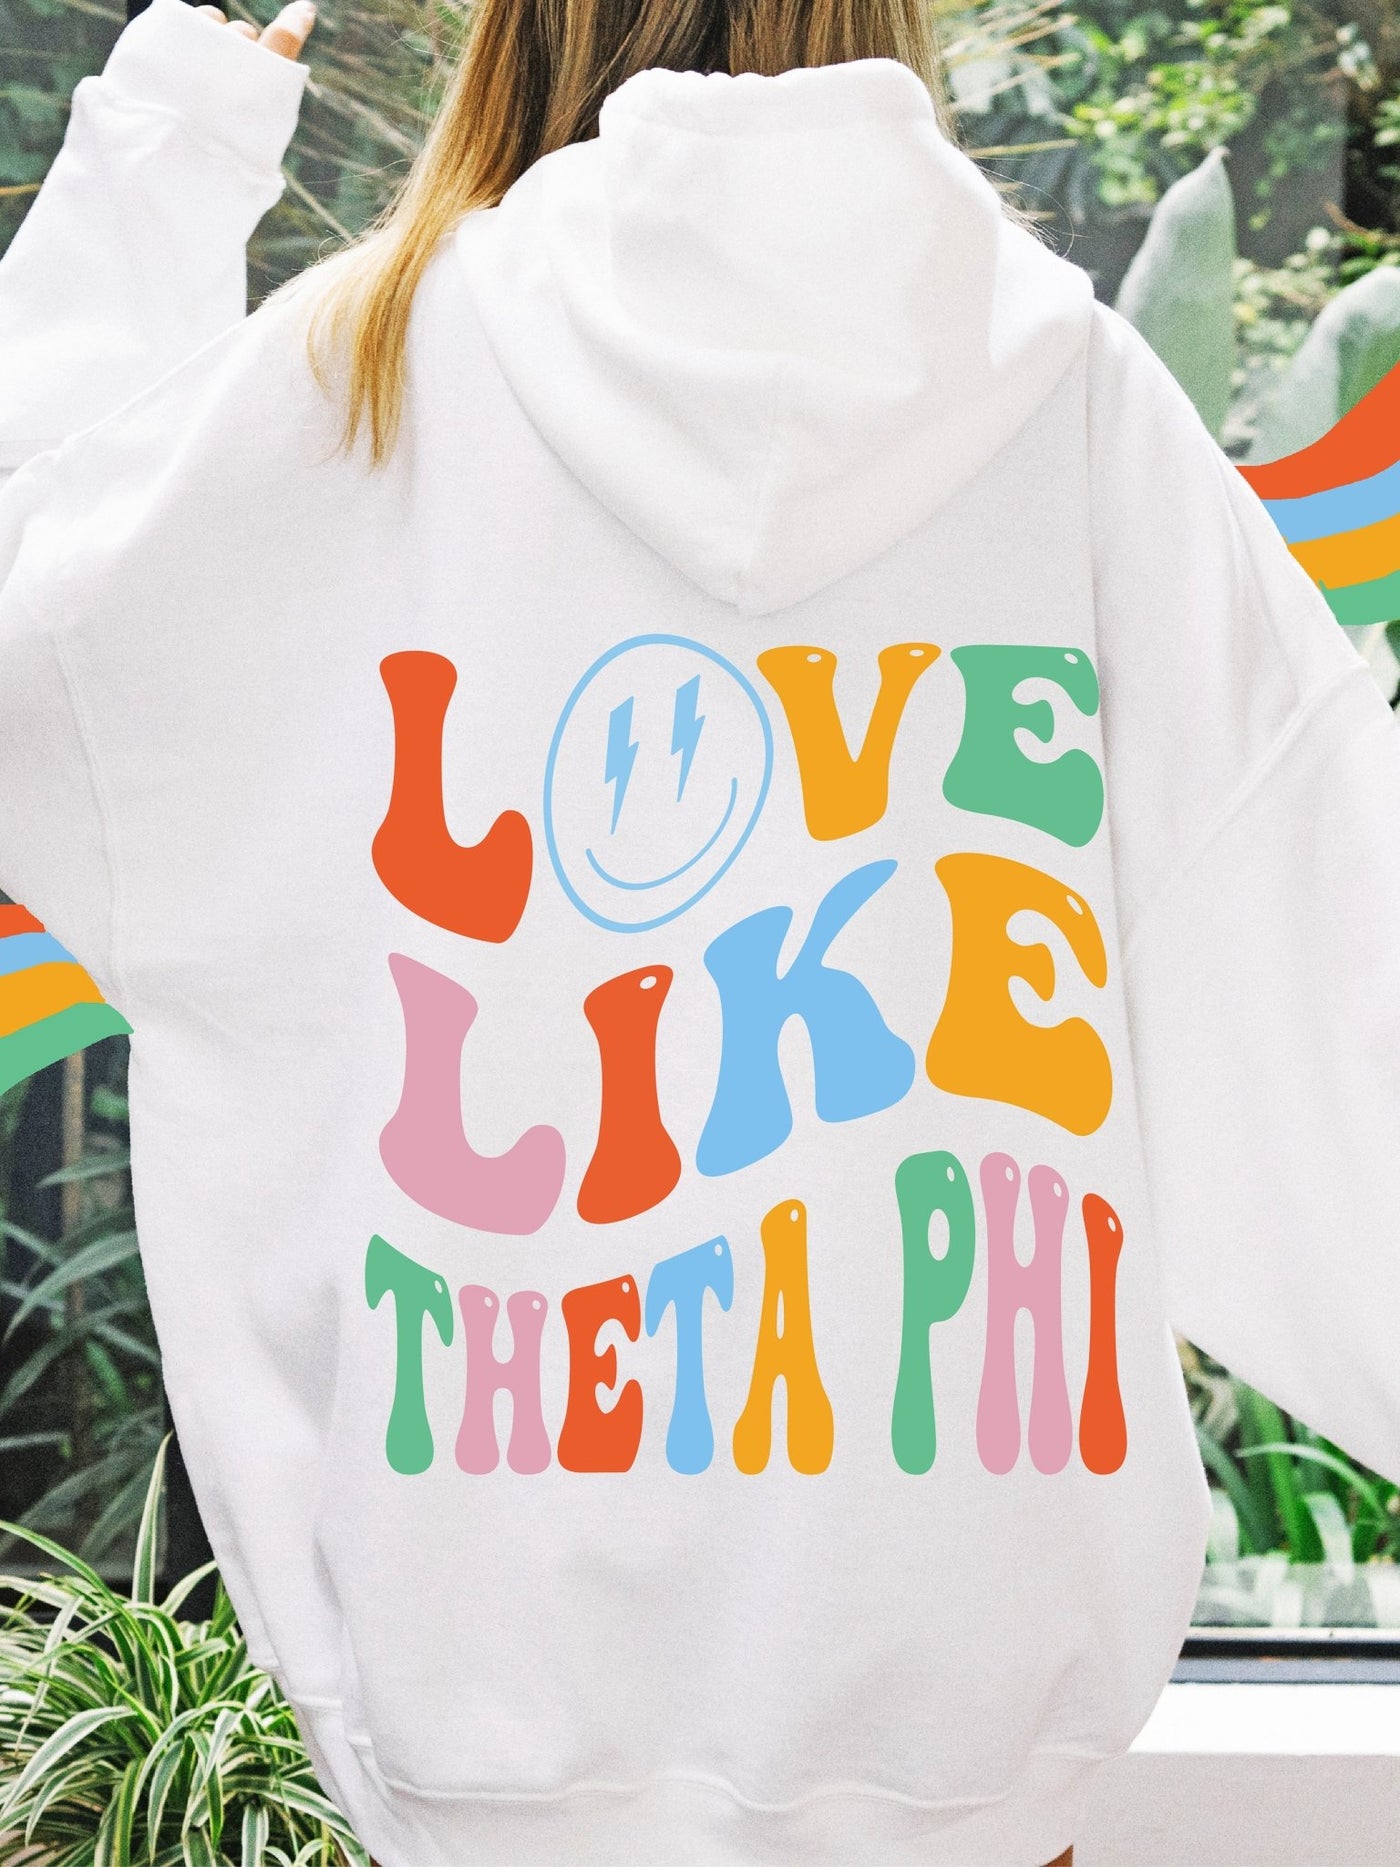 Theta Phi Alpha Soft Sorority Sweatshirt | Love Like Theta Phi Sorority Hoodie